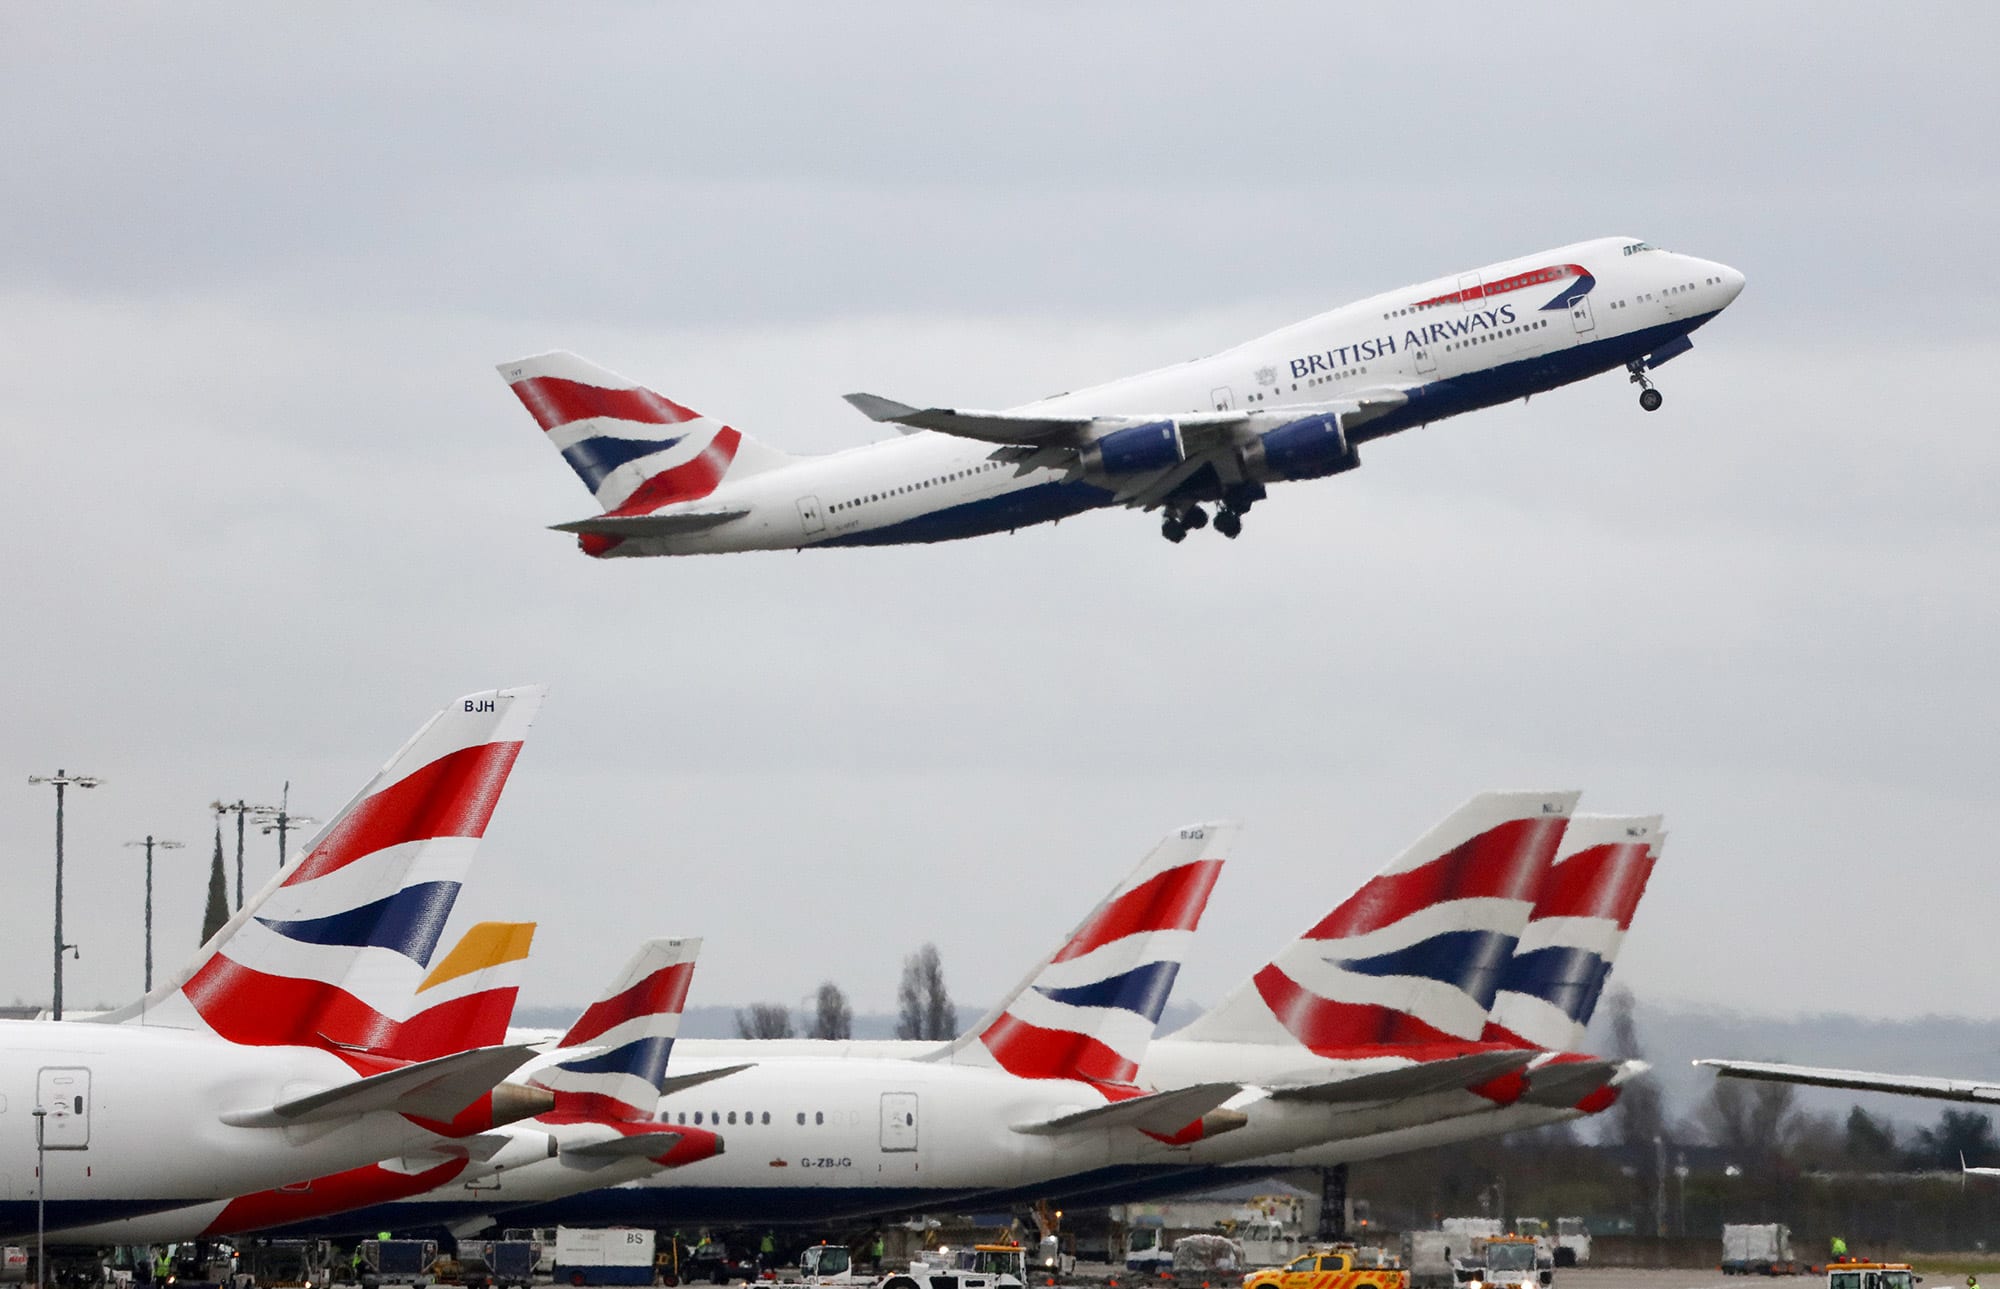 British Airways retires its entire fleet of Boeing 747 jets